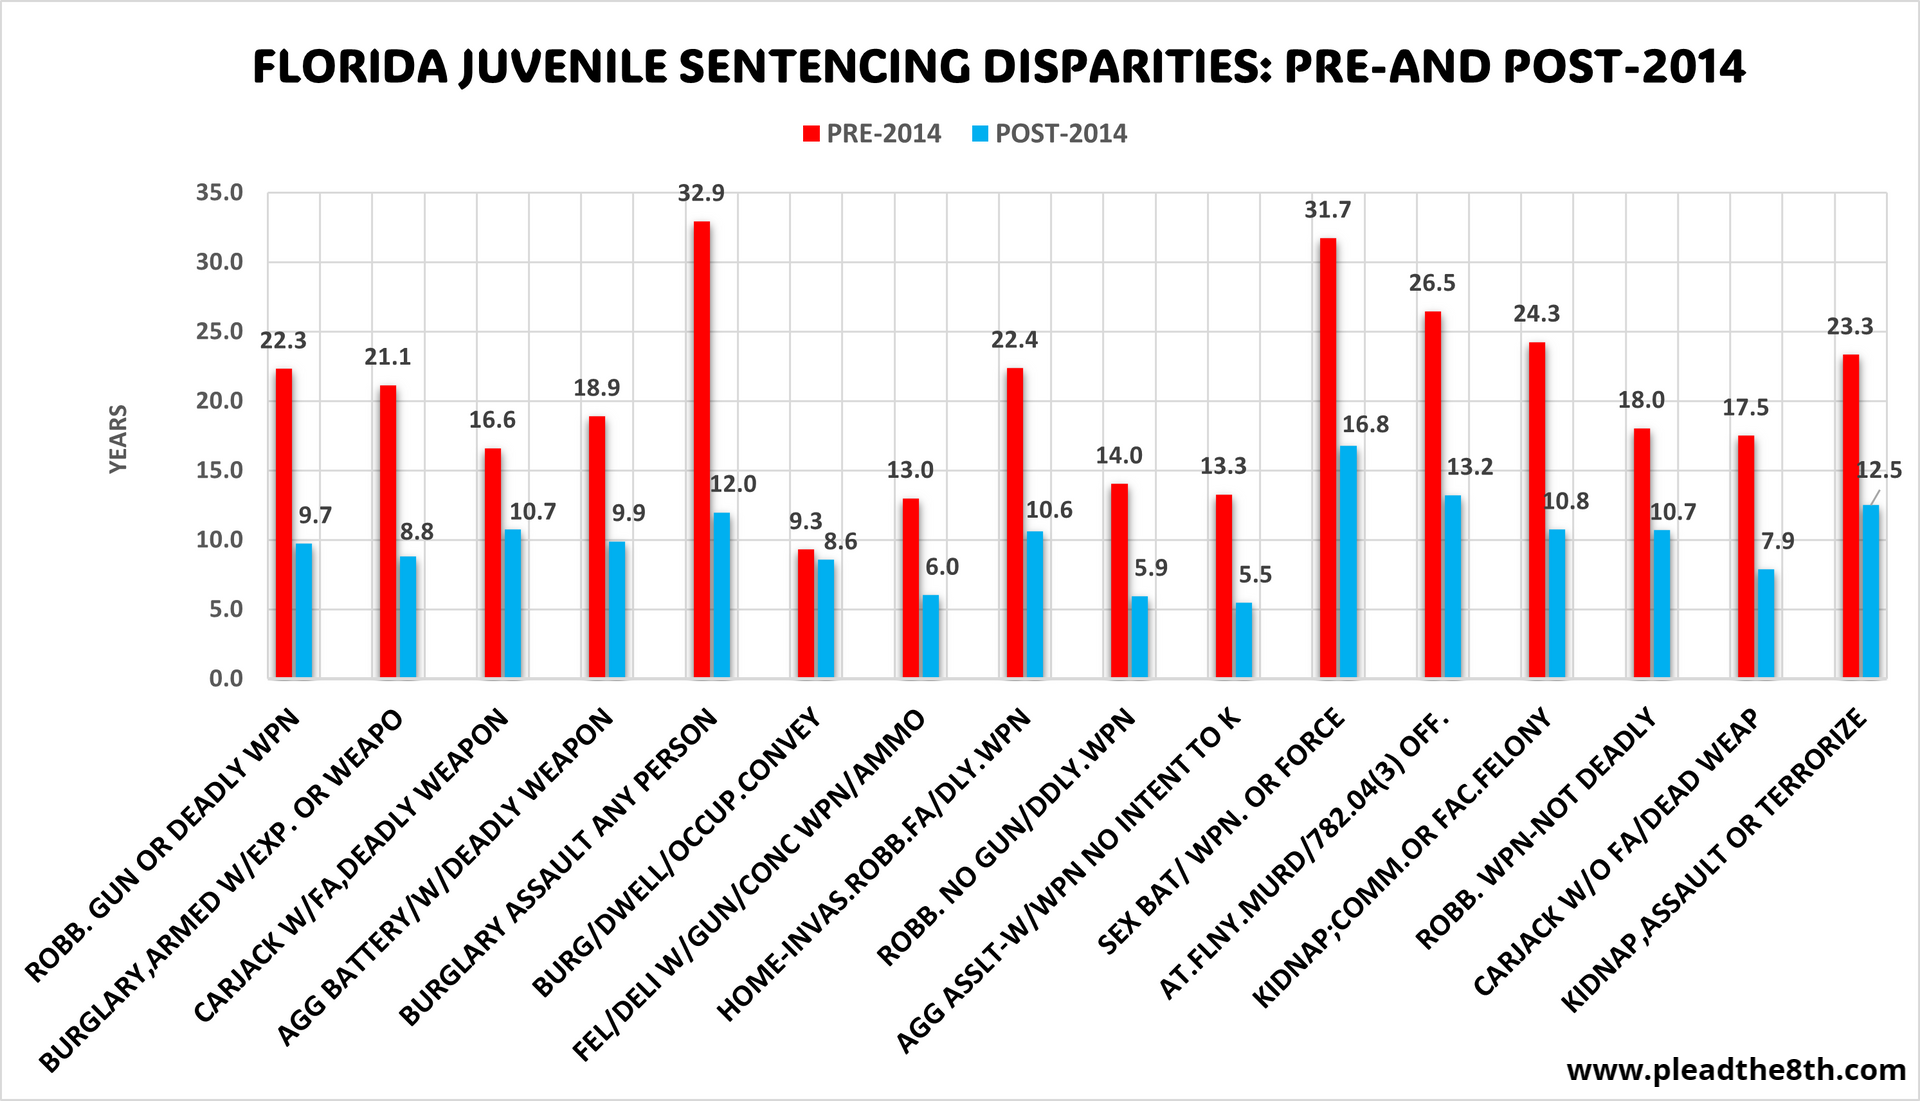 Florida juvenile sentencing disparities: pre-and post-2014